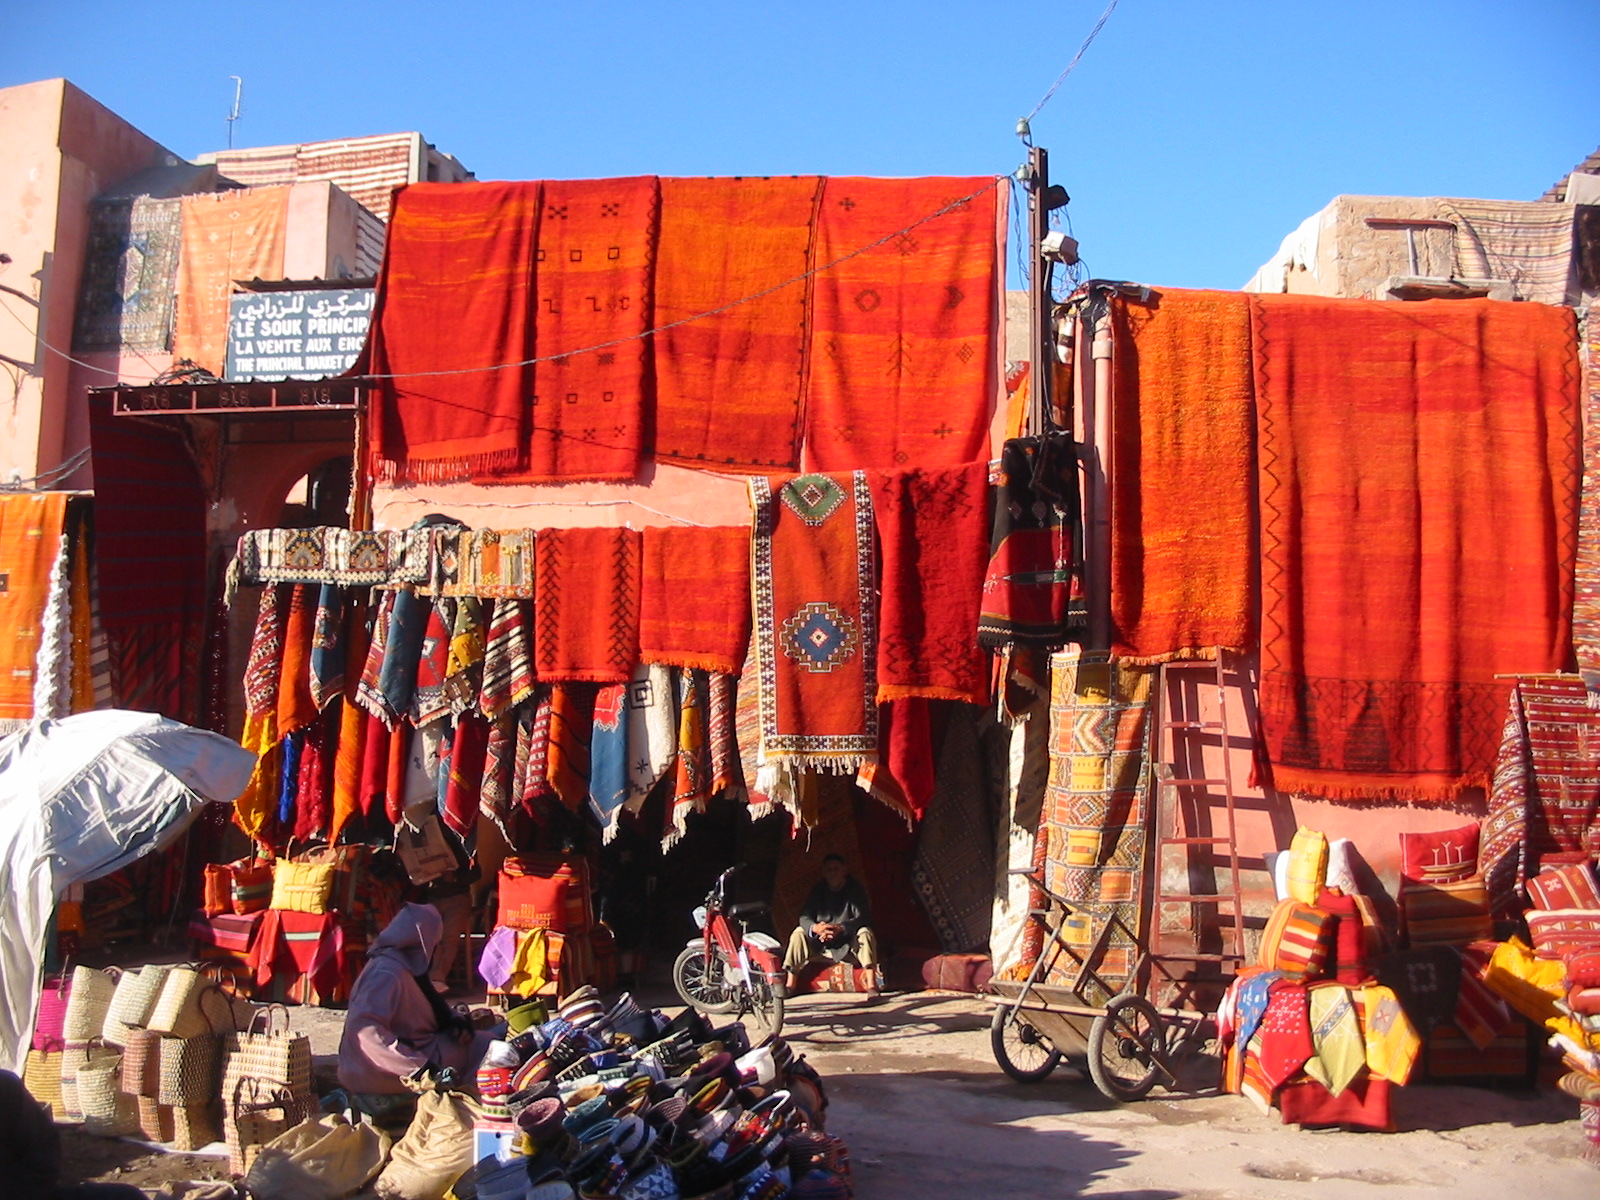 Carpets in Marrakech